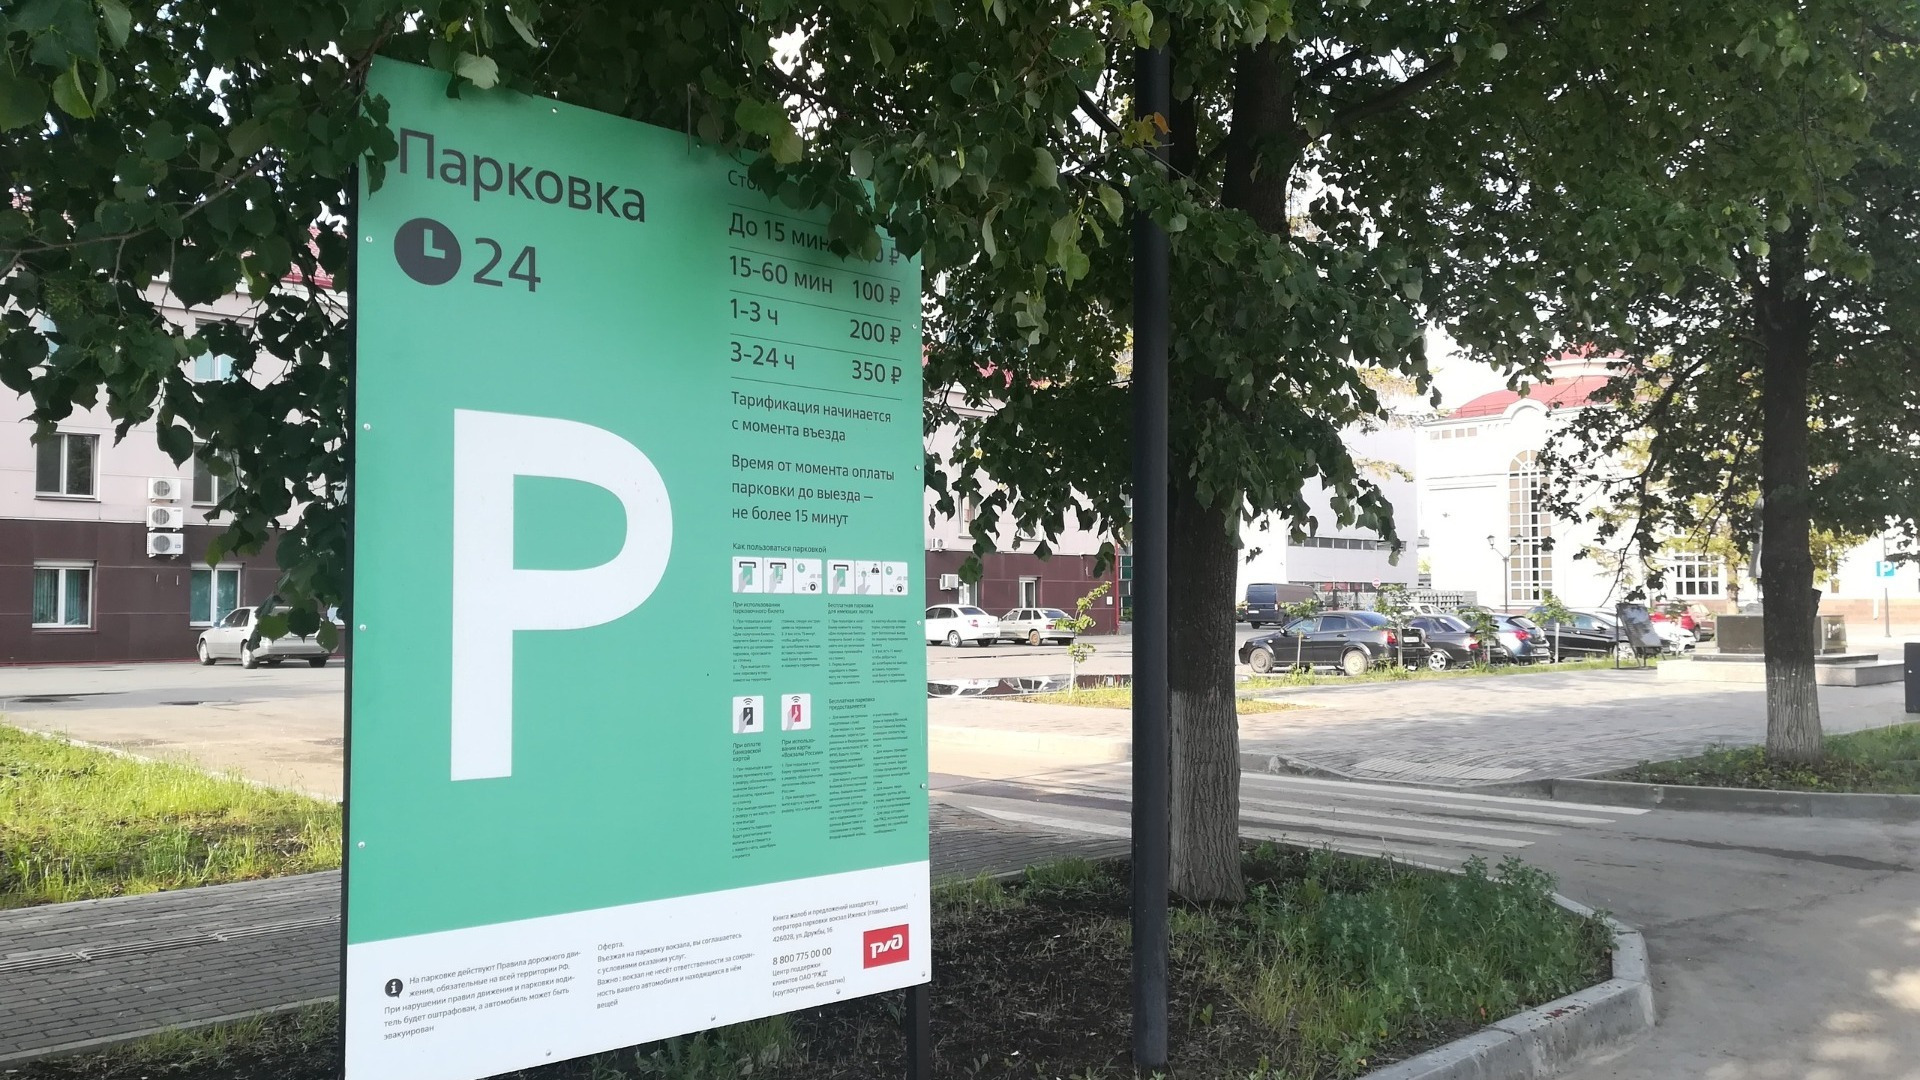 Около 100 нарушений пользования платными парковками регистрируют в Ижевске ежедневно